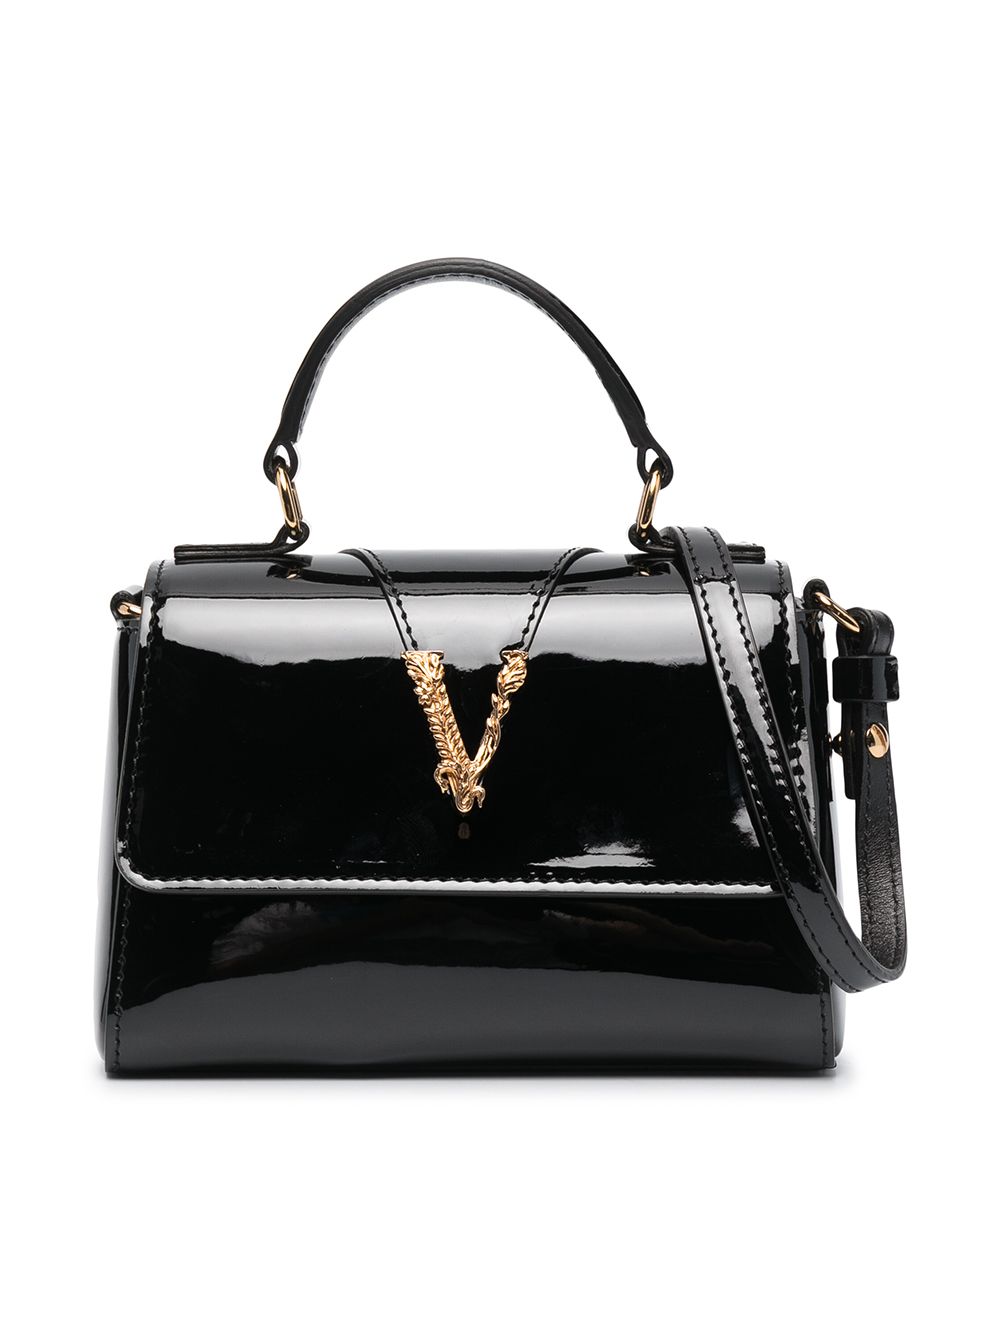 Versace Kids Virtus plaque handbag - Black von Versace Kids